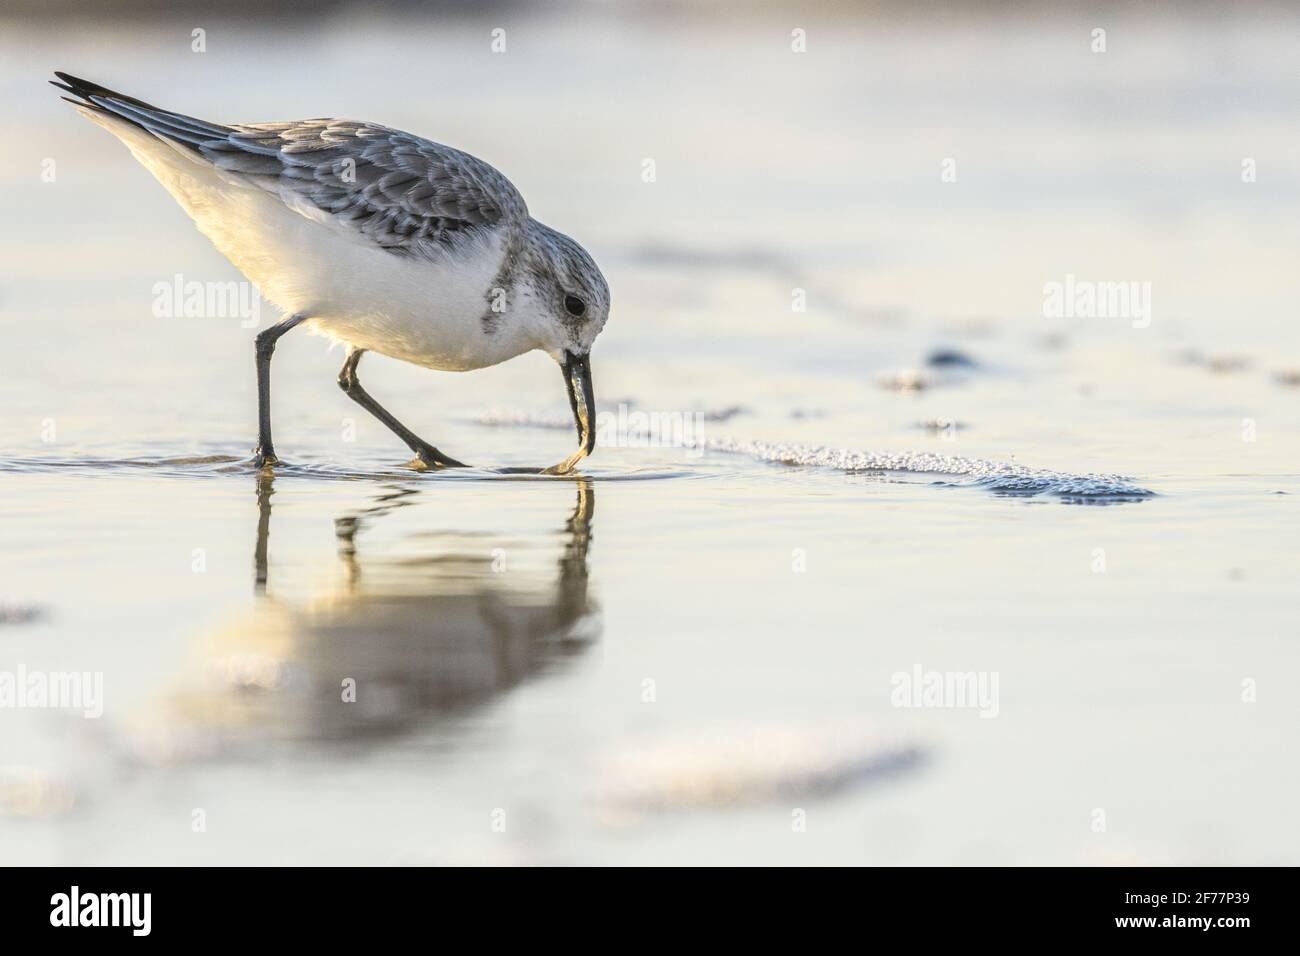 France, somme, Baie de somme, Quend-Plage, Sandpiper sanderling (Calidris alba) sur la plage à la recherche de nourriture dans la brise de mer Banque D'Images